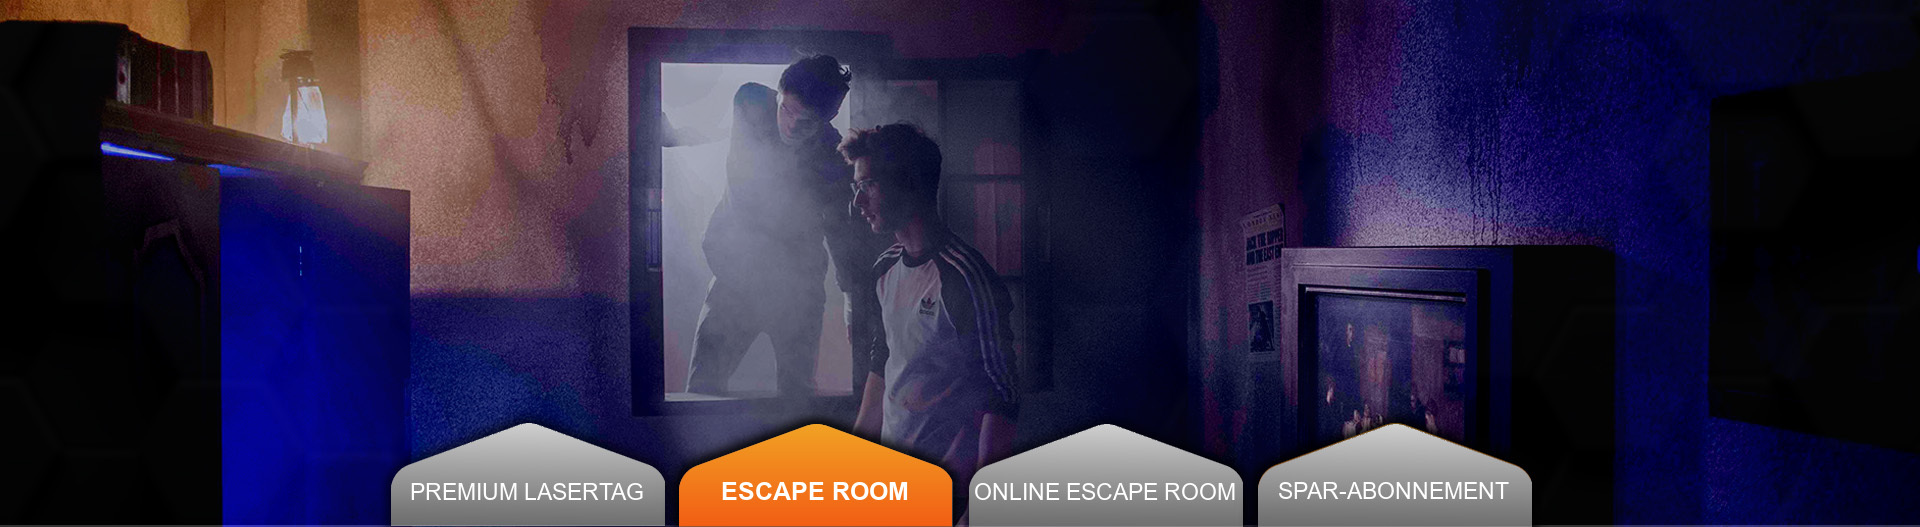 Live Escape Room Geheimnisraum in Schwarzlicht